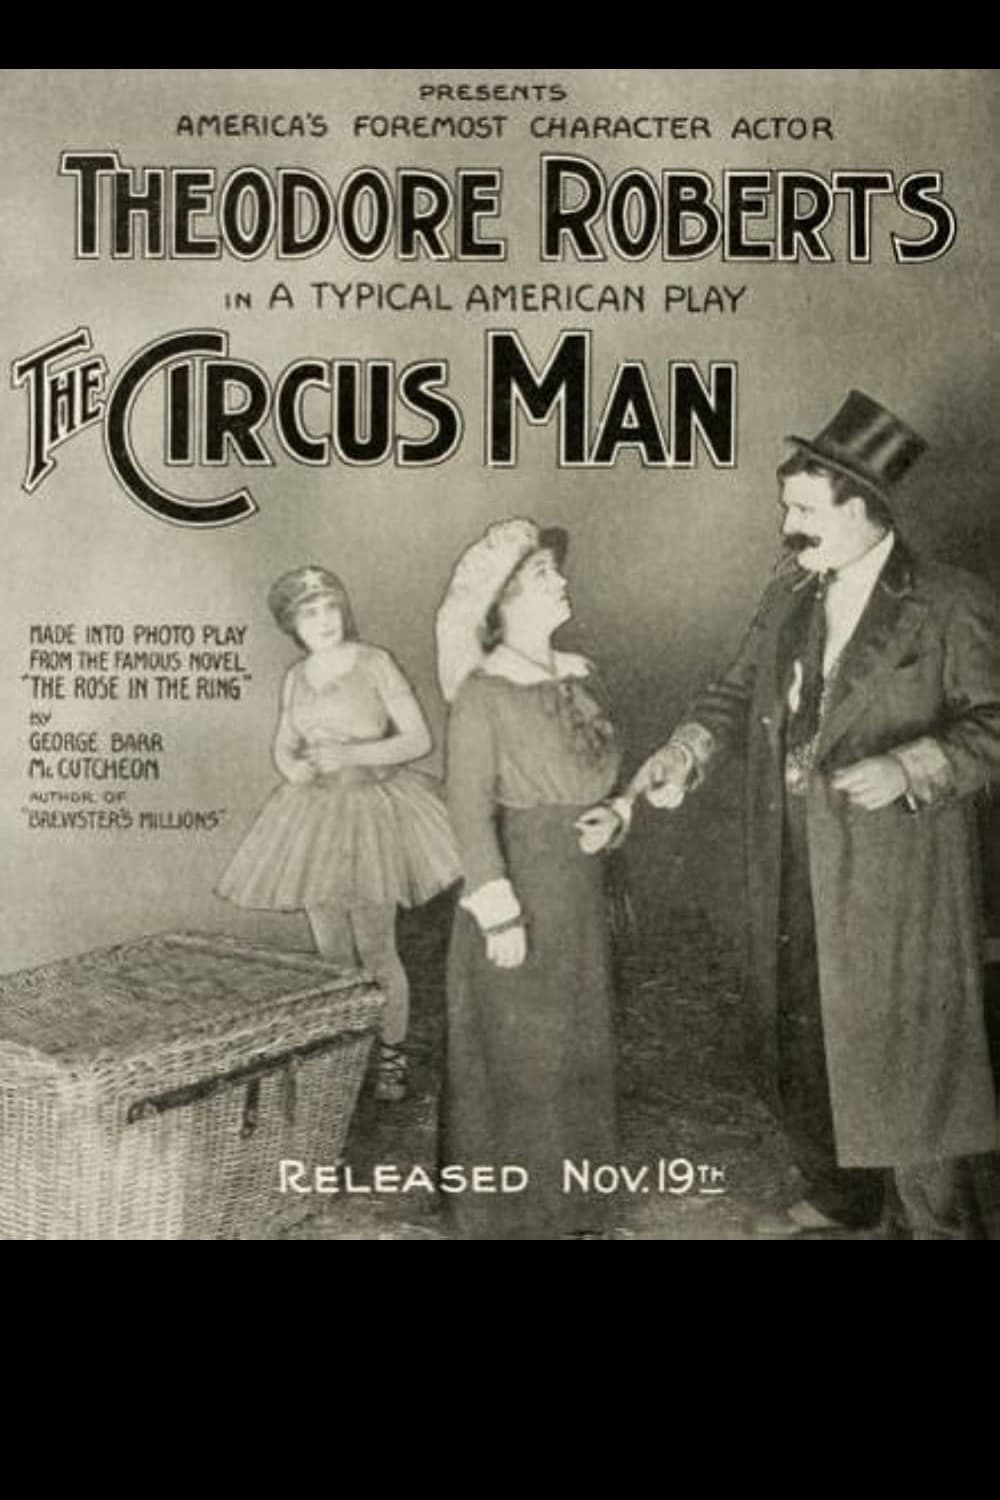 The Circus Man